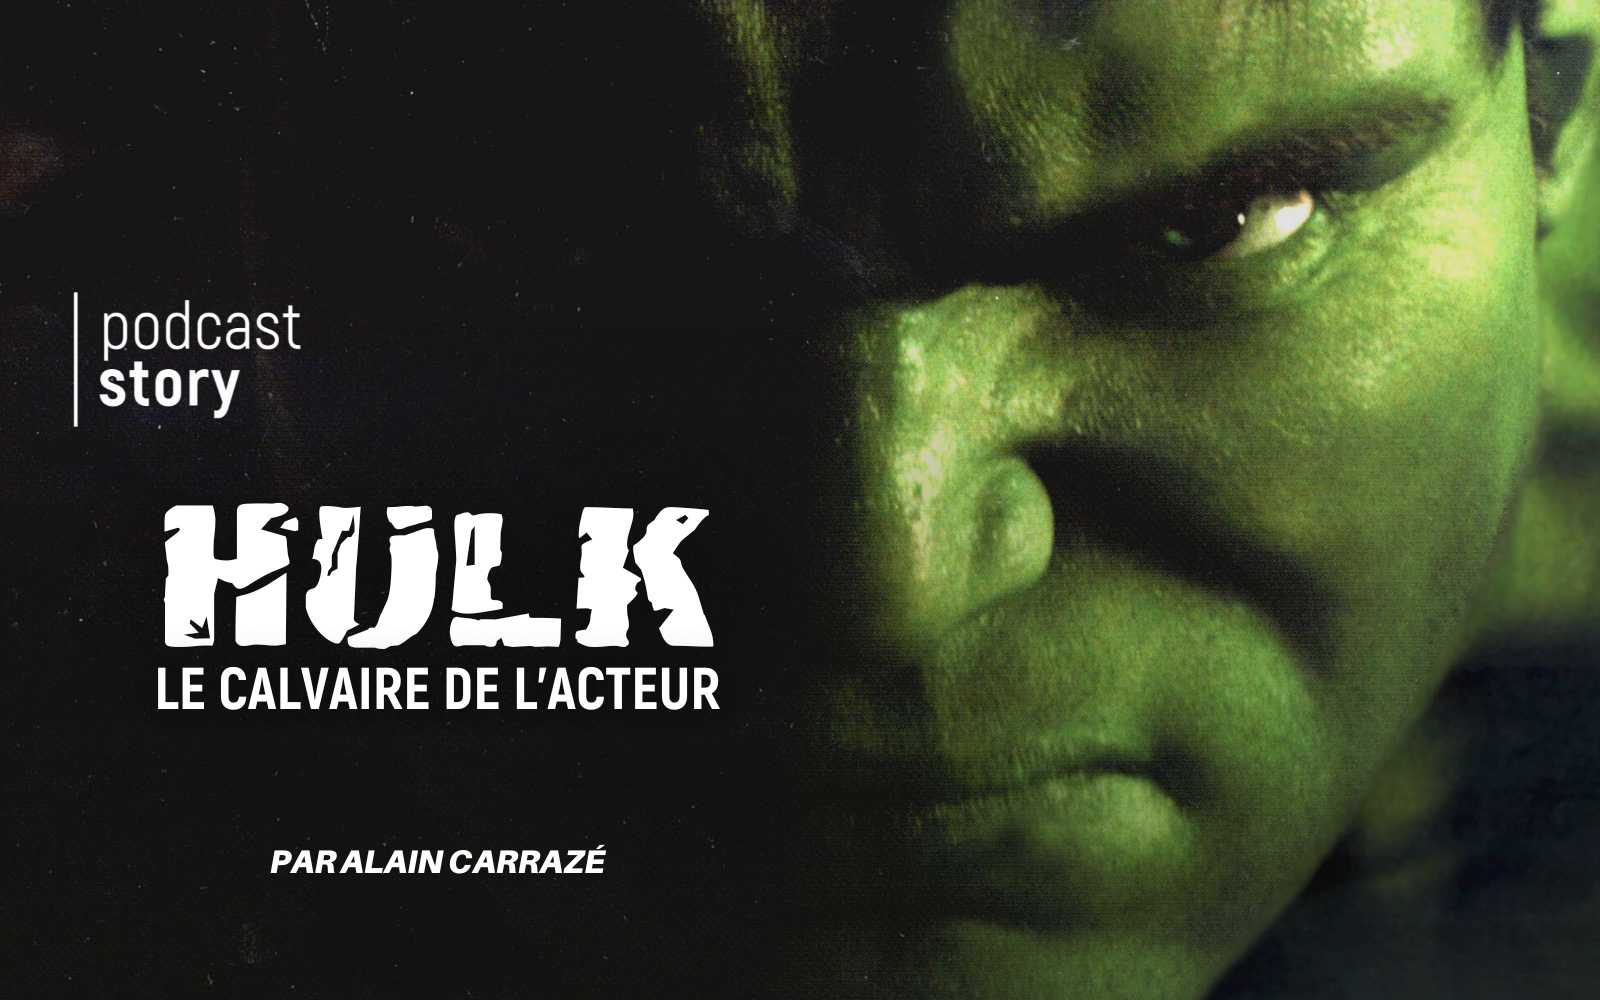 HULK, LE CALVAIRE DE L’ACTEUR